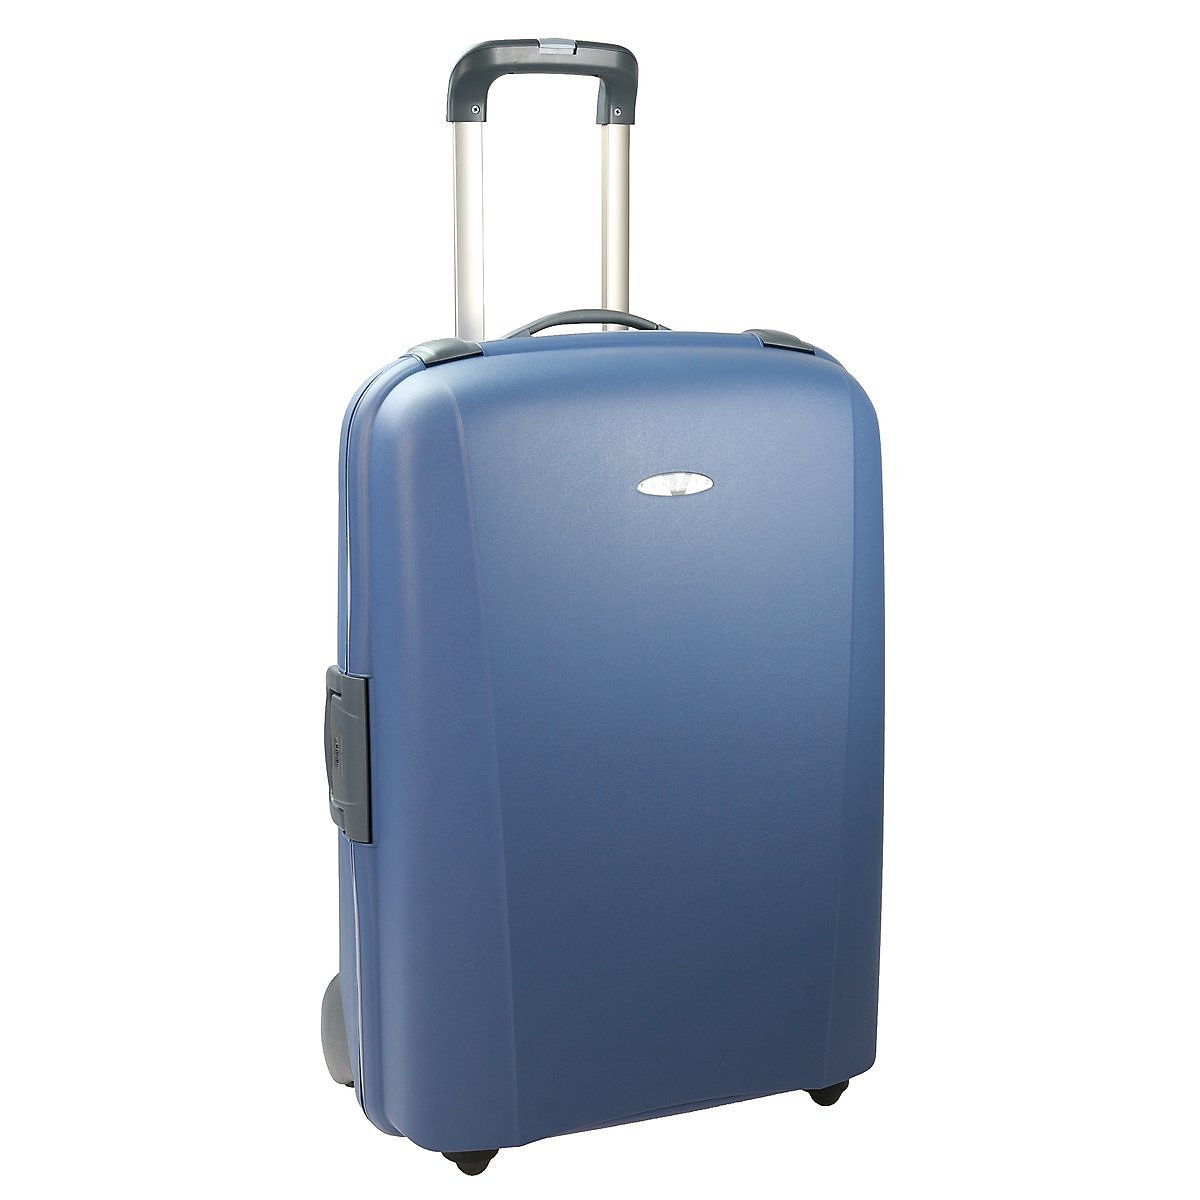 Guide d’infos pour bien préparer sa valise pour un voyage